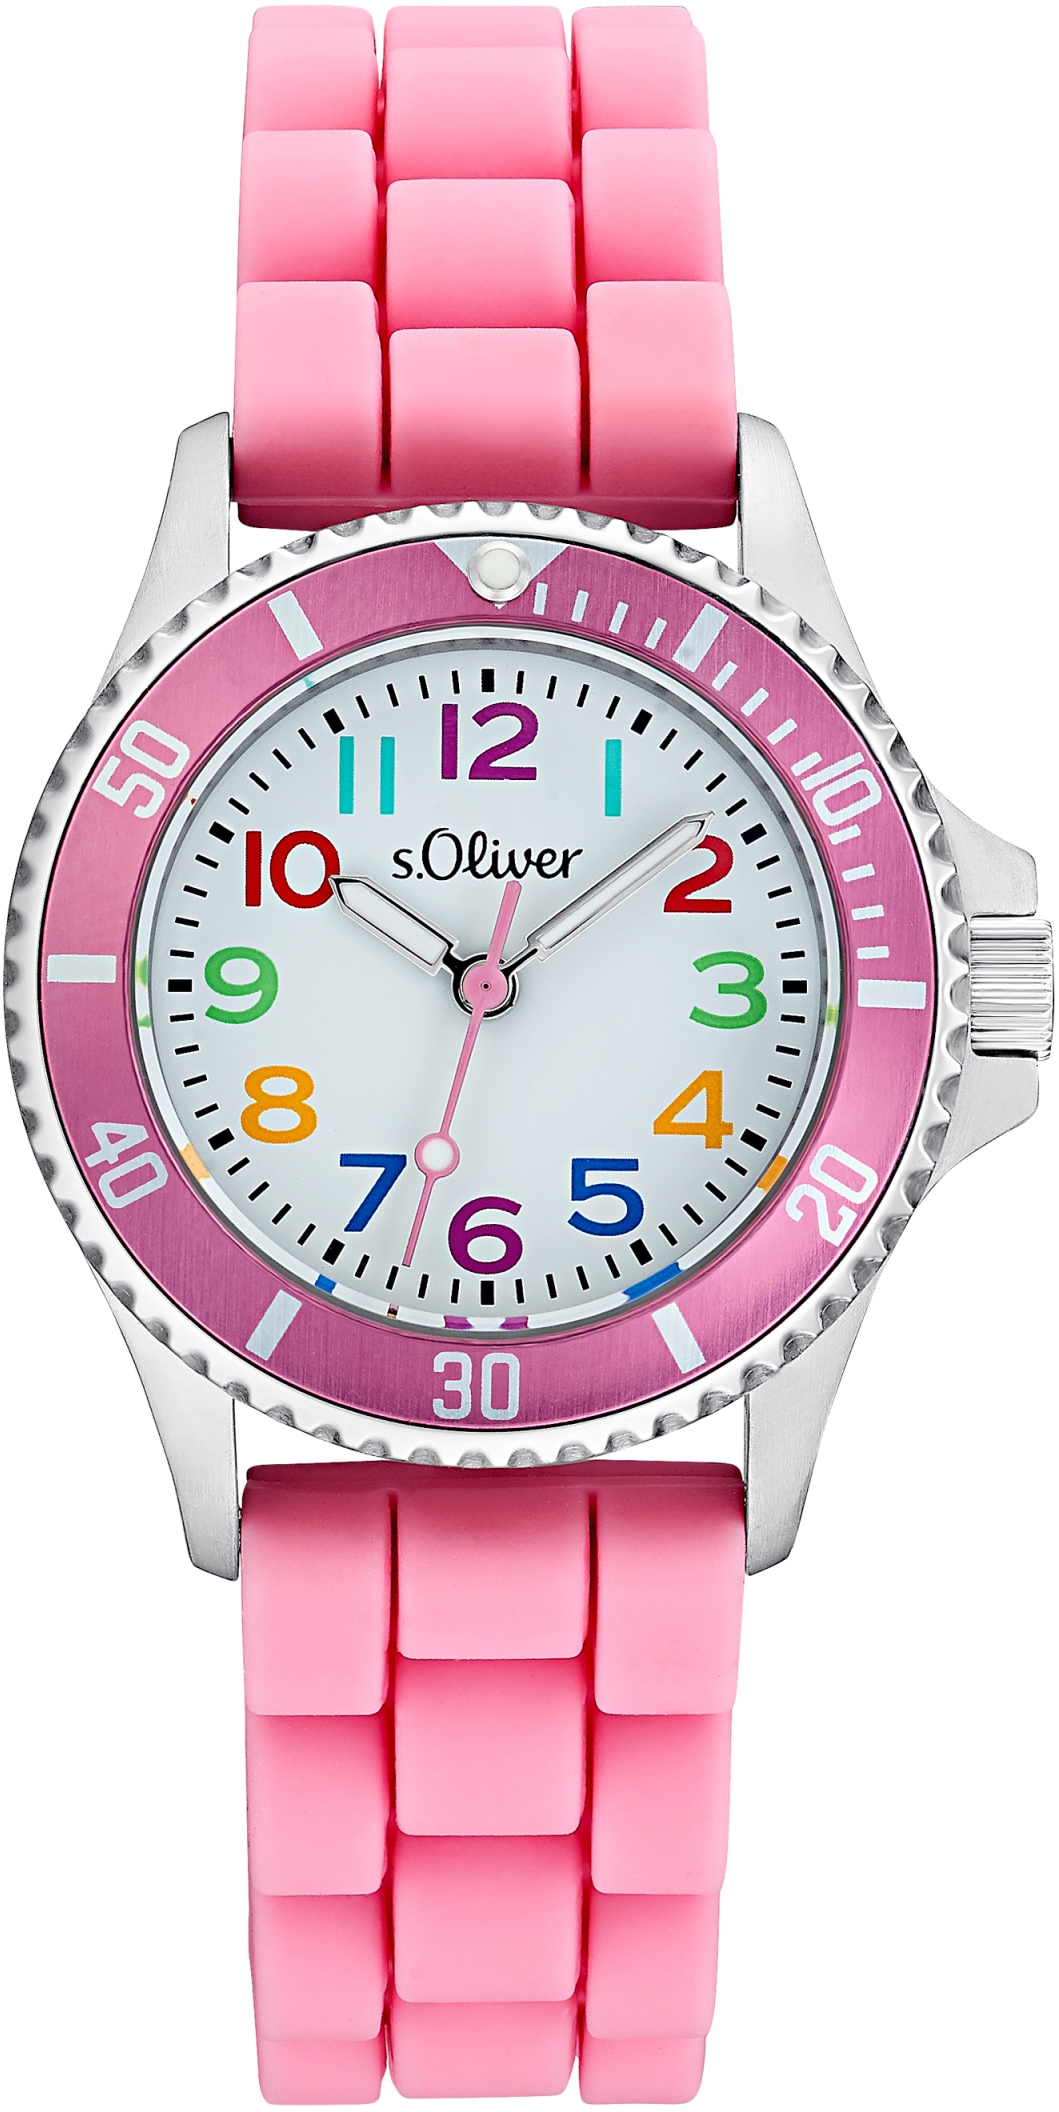 Quarzuhr »2033505«, Armbanduhr, Kinderuhr, Mädchenuhr, ideal auch als Geschenk